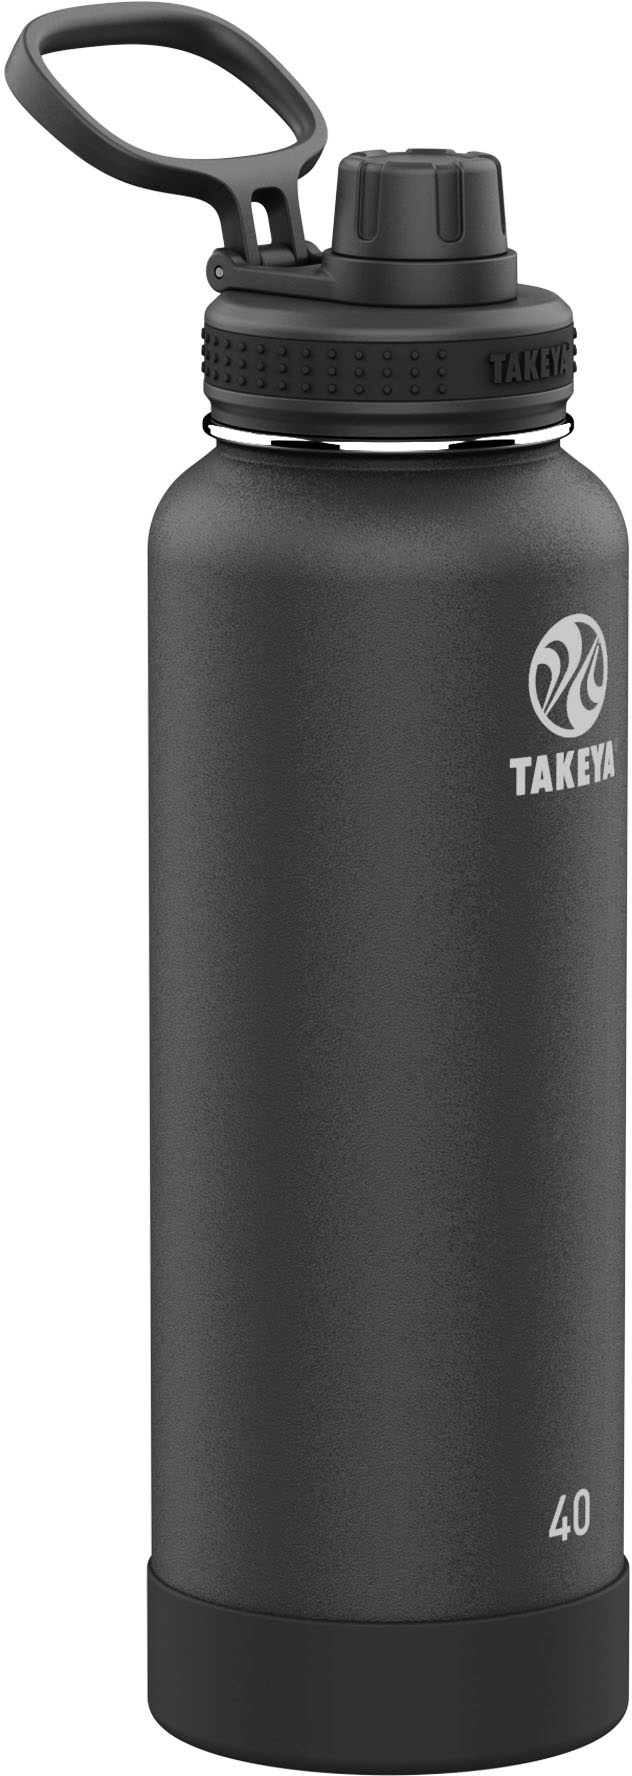 Takeya Shaker 24oz Spout Tumbler Onyx 51622 - Best Buy